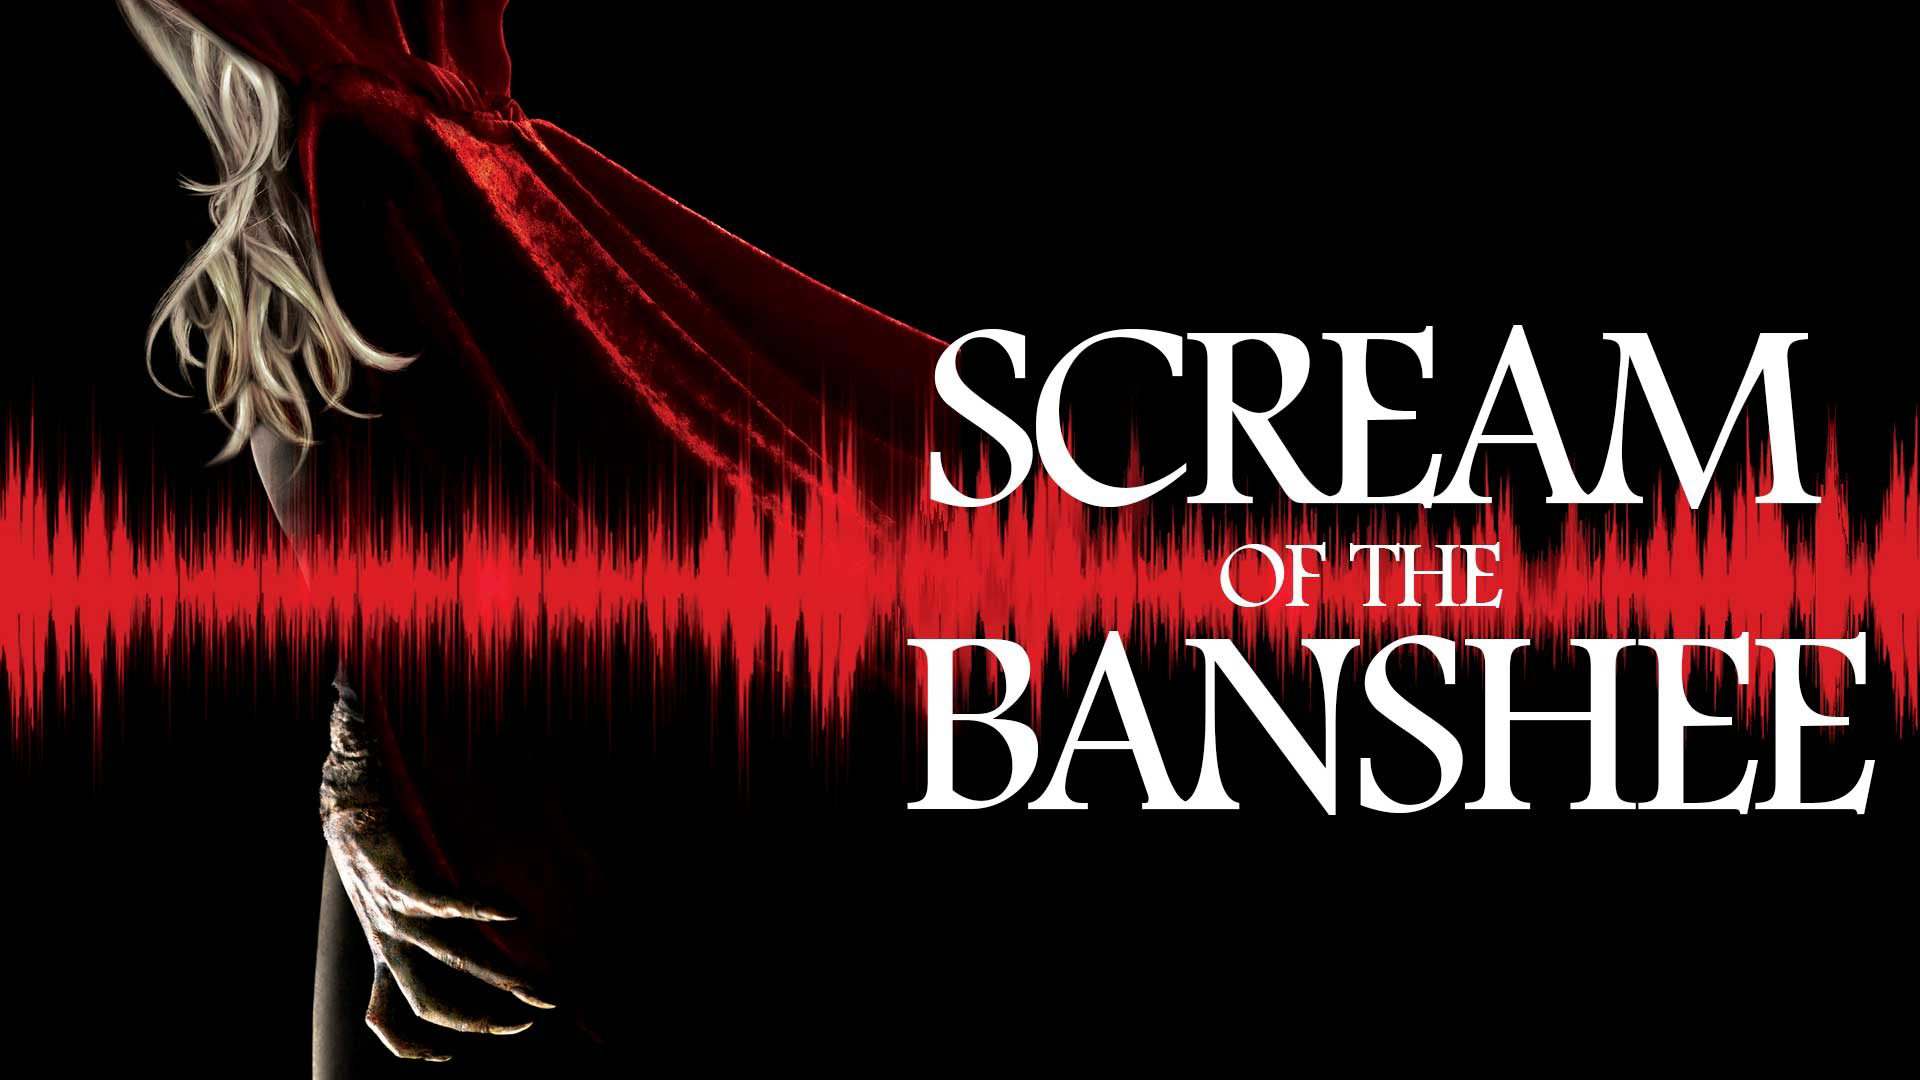 Scream of the Banshee / Scream of the Banshee (2011)